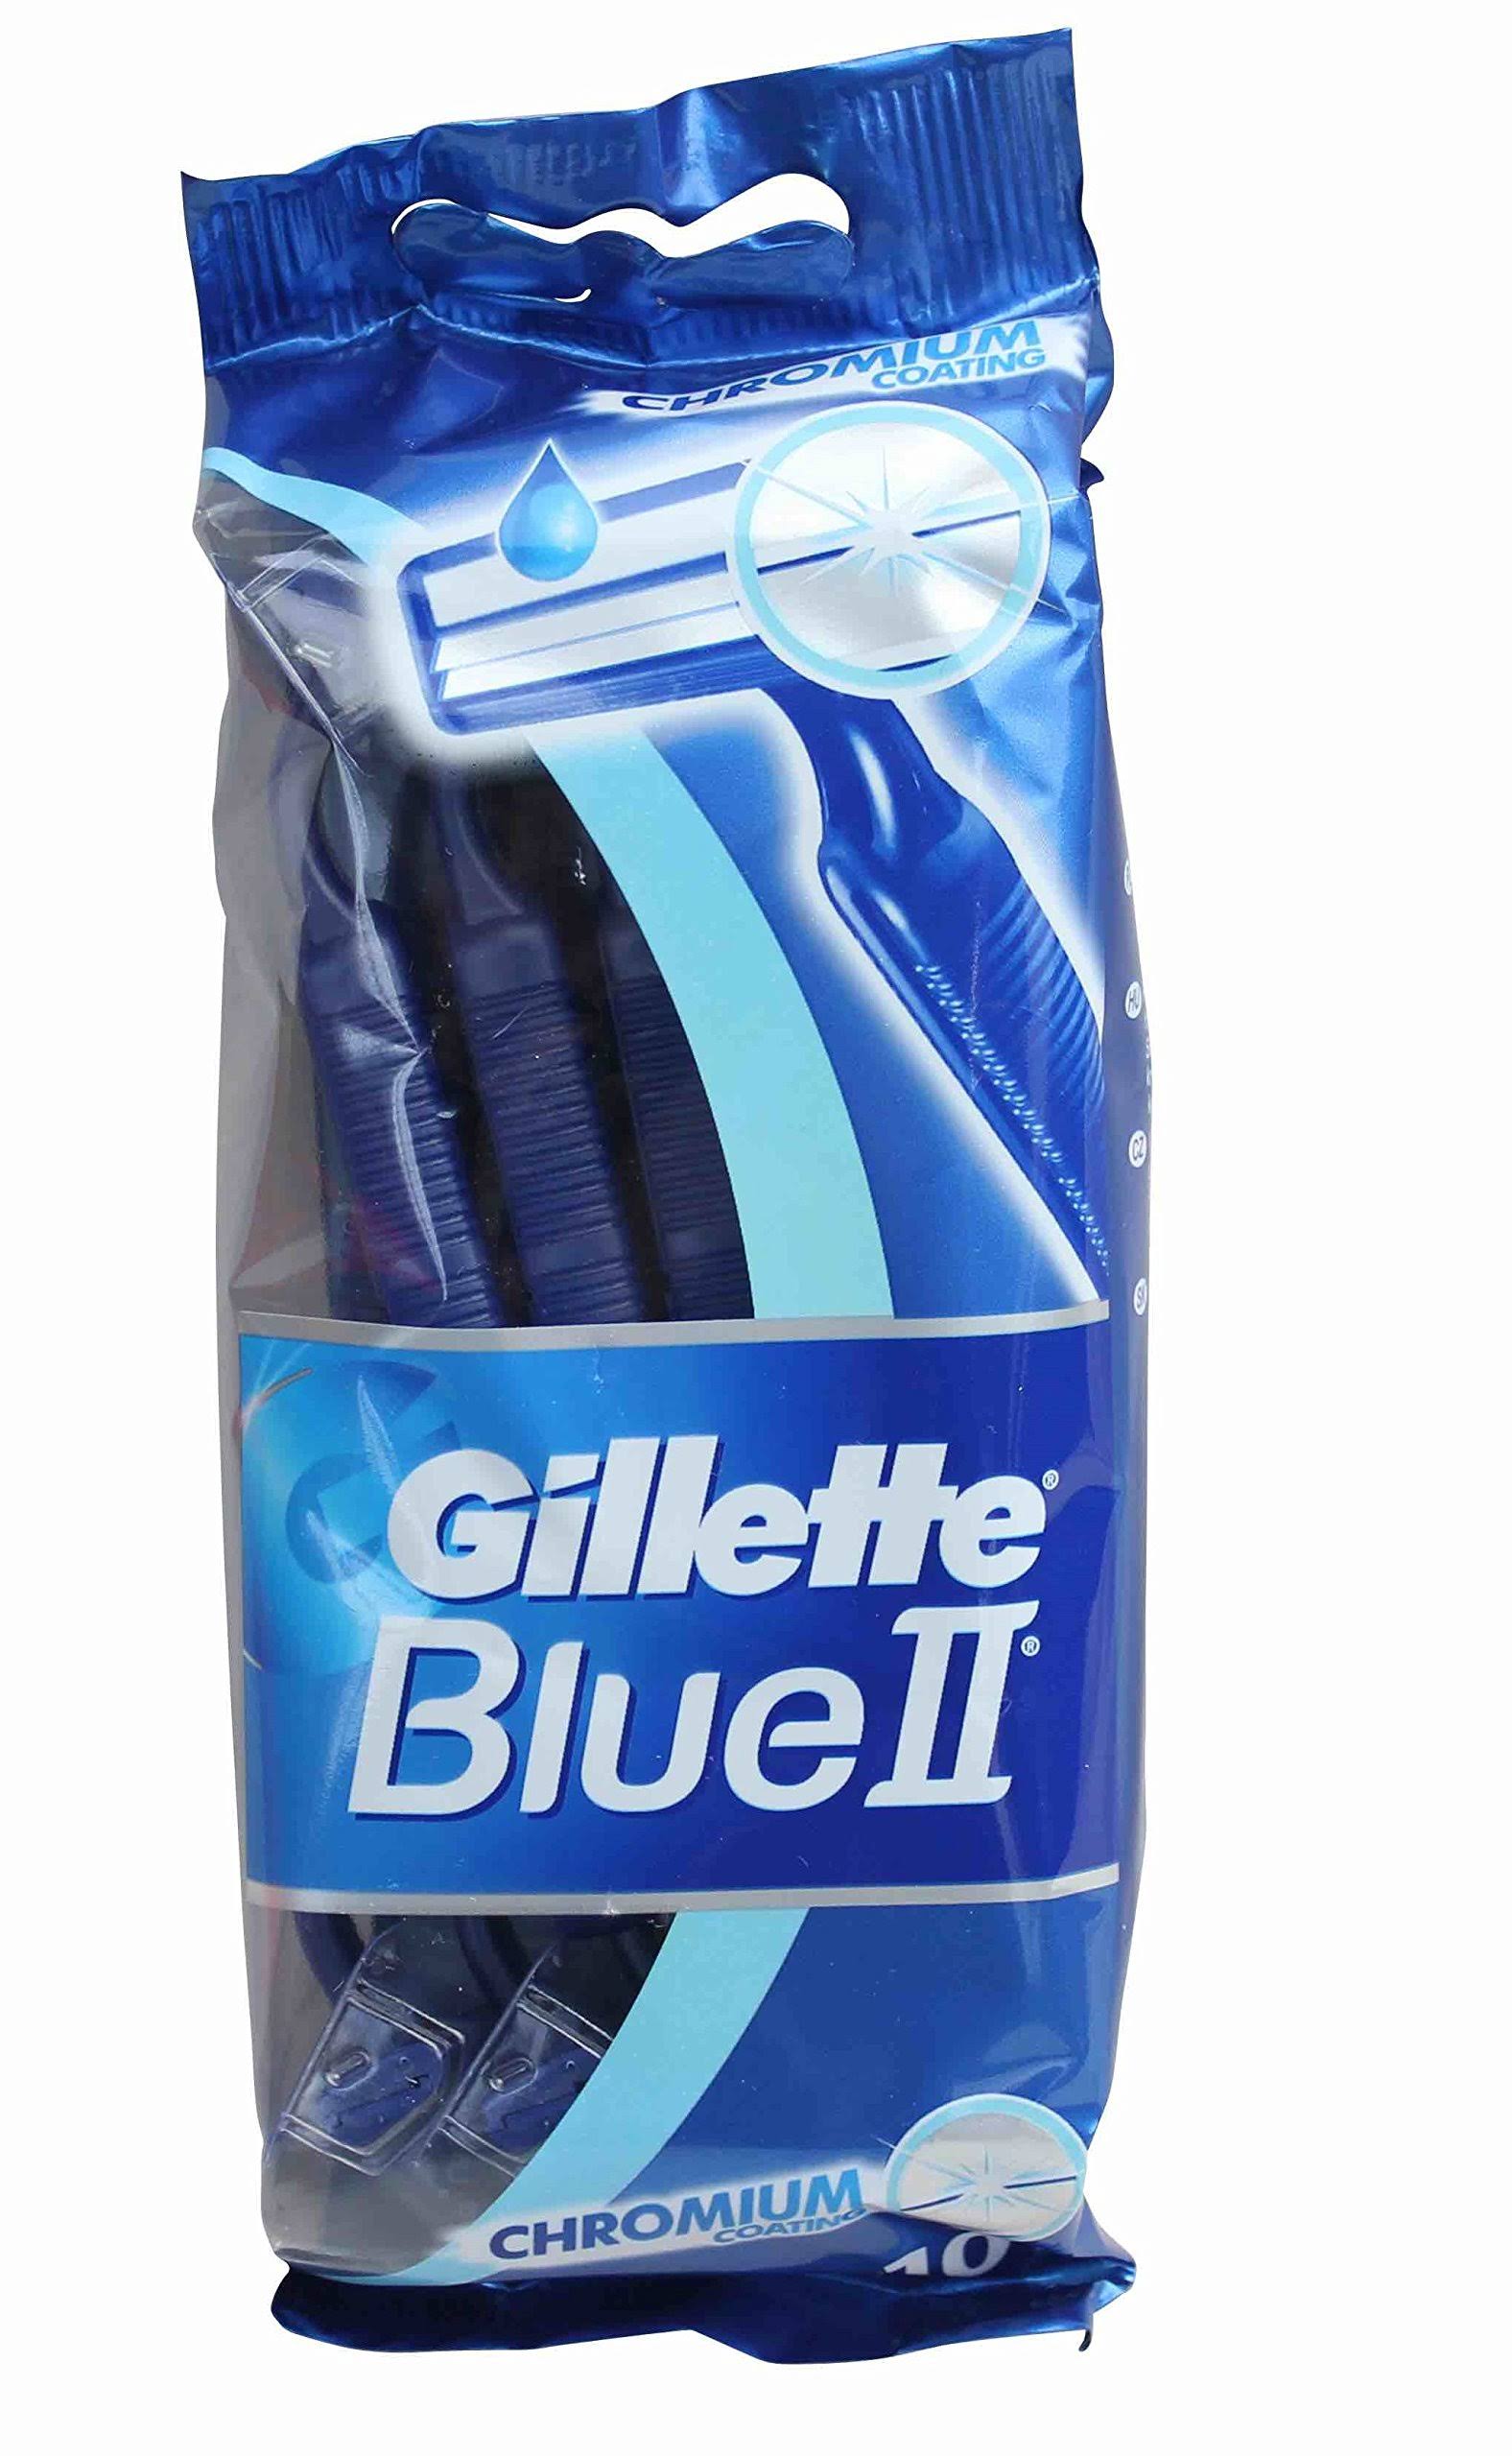 Gillette Blue II Chromium Mens Disposable Razors - 10pk